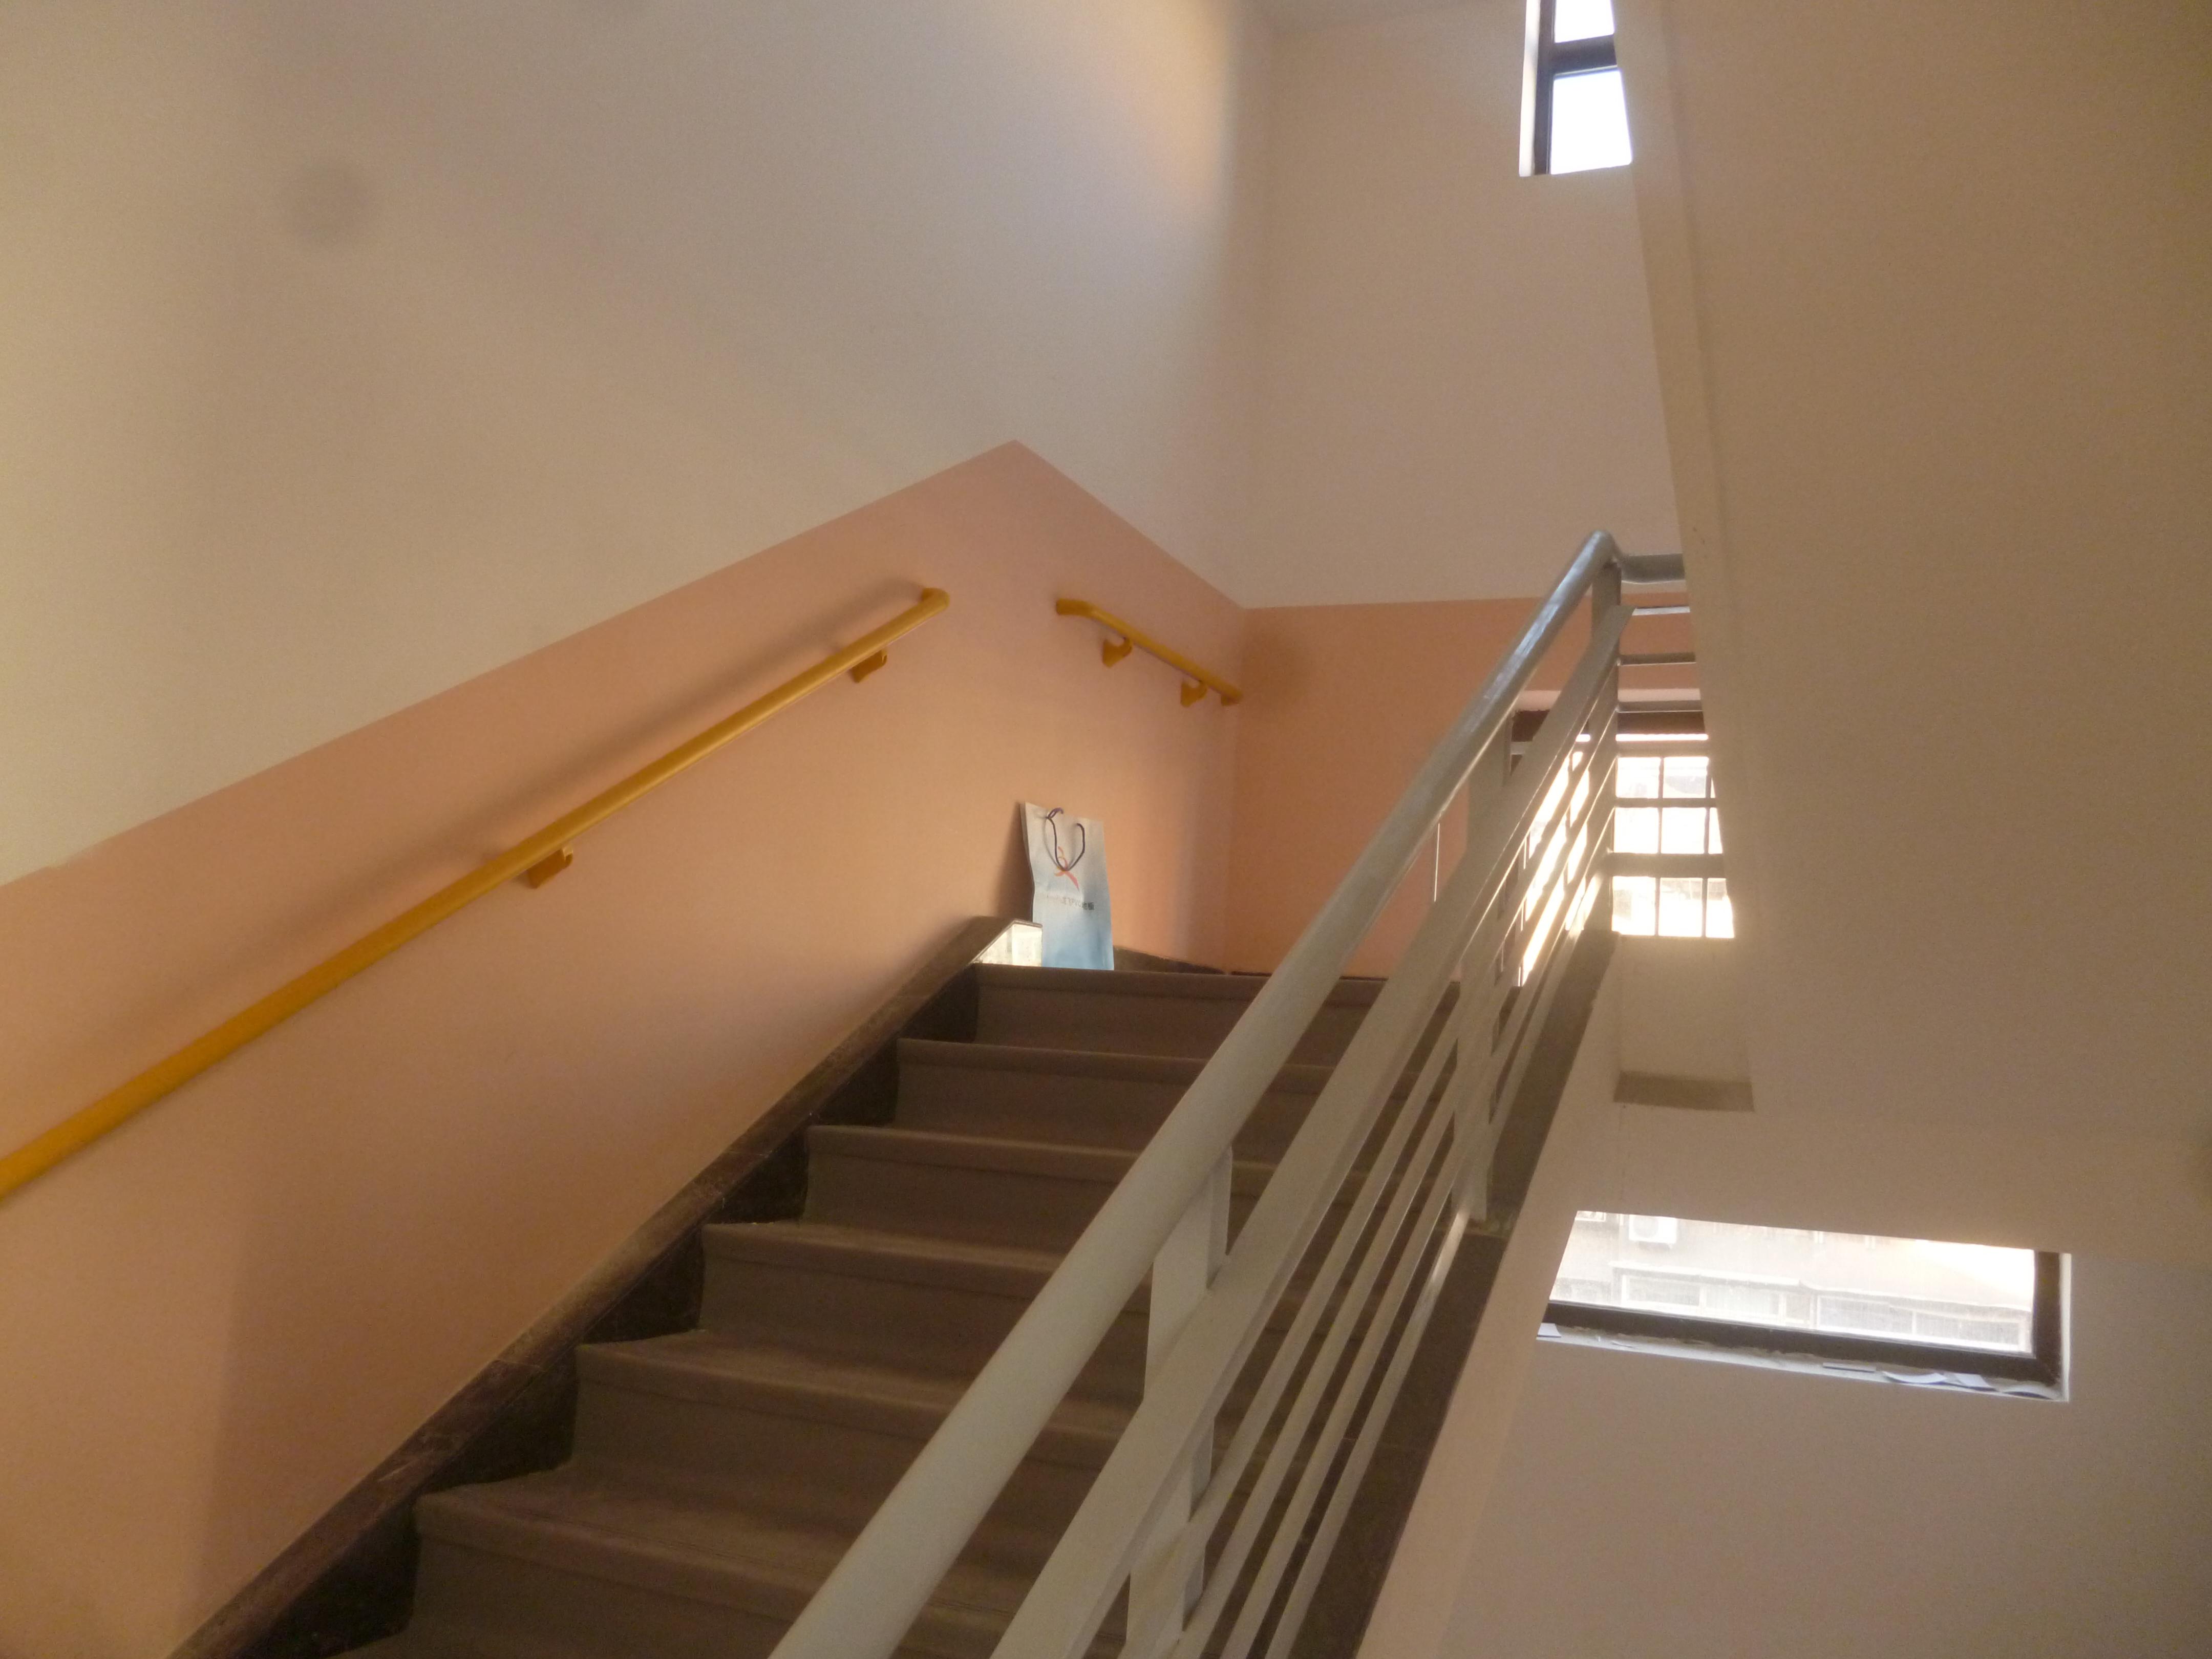 楼梯踏步安装完PVC整体踏步后效果图二_4320x3240